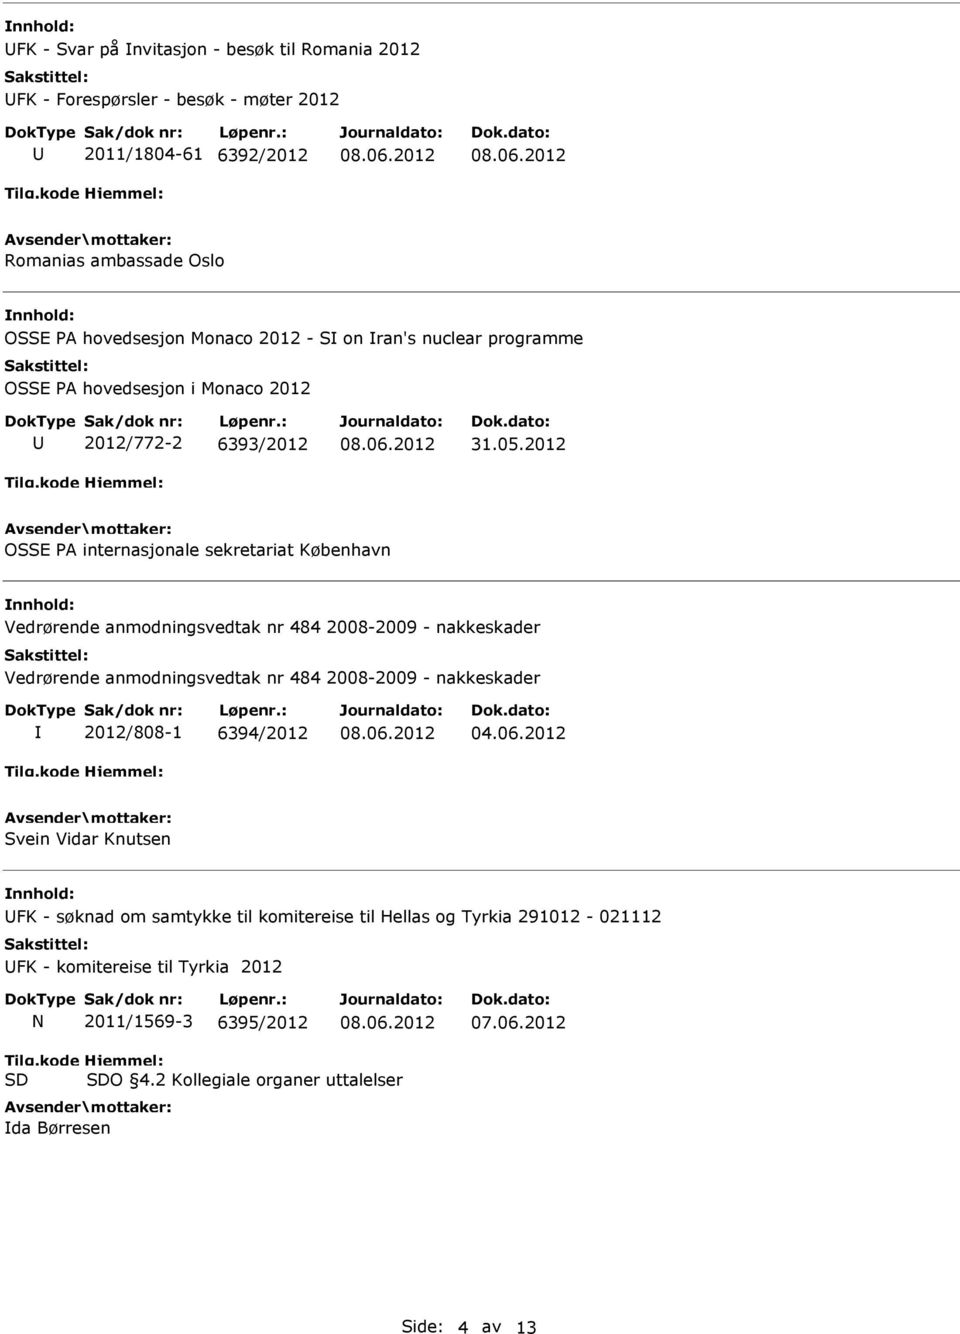 2012 OSSE PA internasjonale sekretariat København Vedrørende anmodningsvedtak nr 484 2008-2009 - nakkeskader Vedrørende anmodningsvedtak nr 484 2008-2009 - nakkeskader